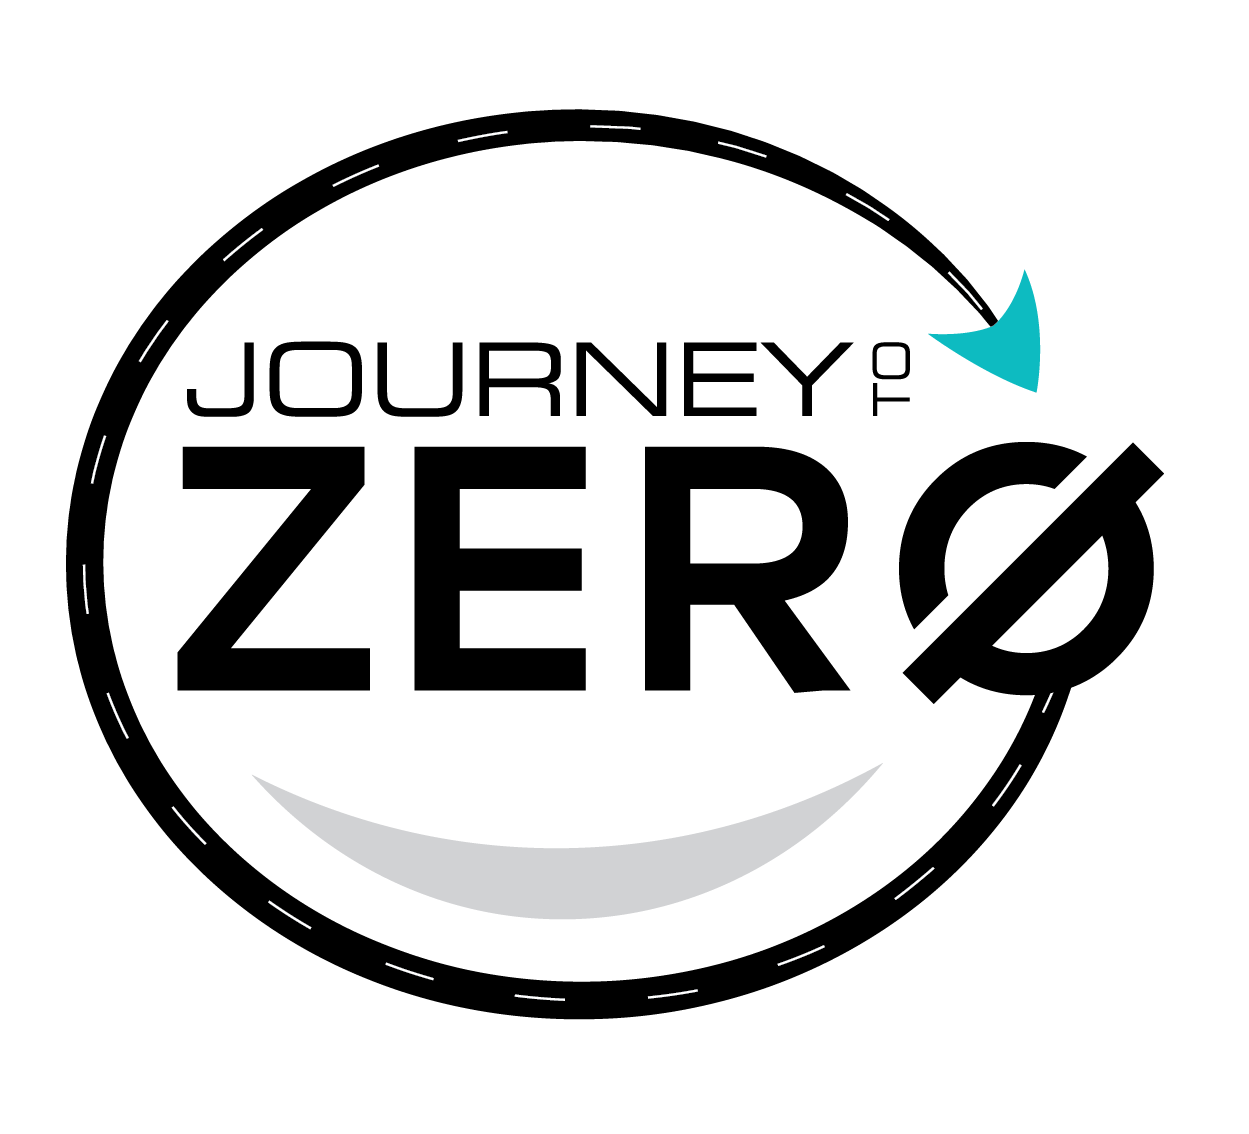 journey to zero harm